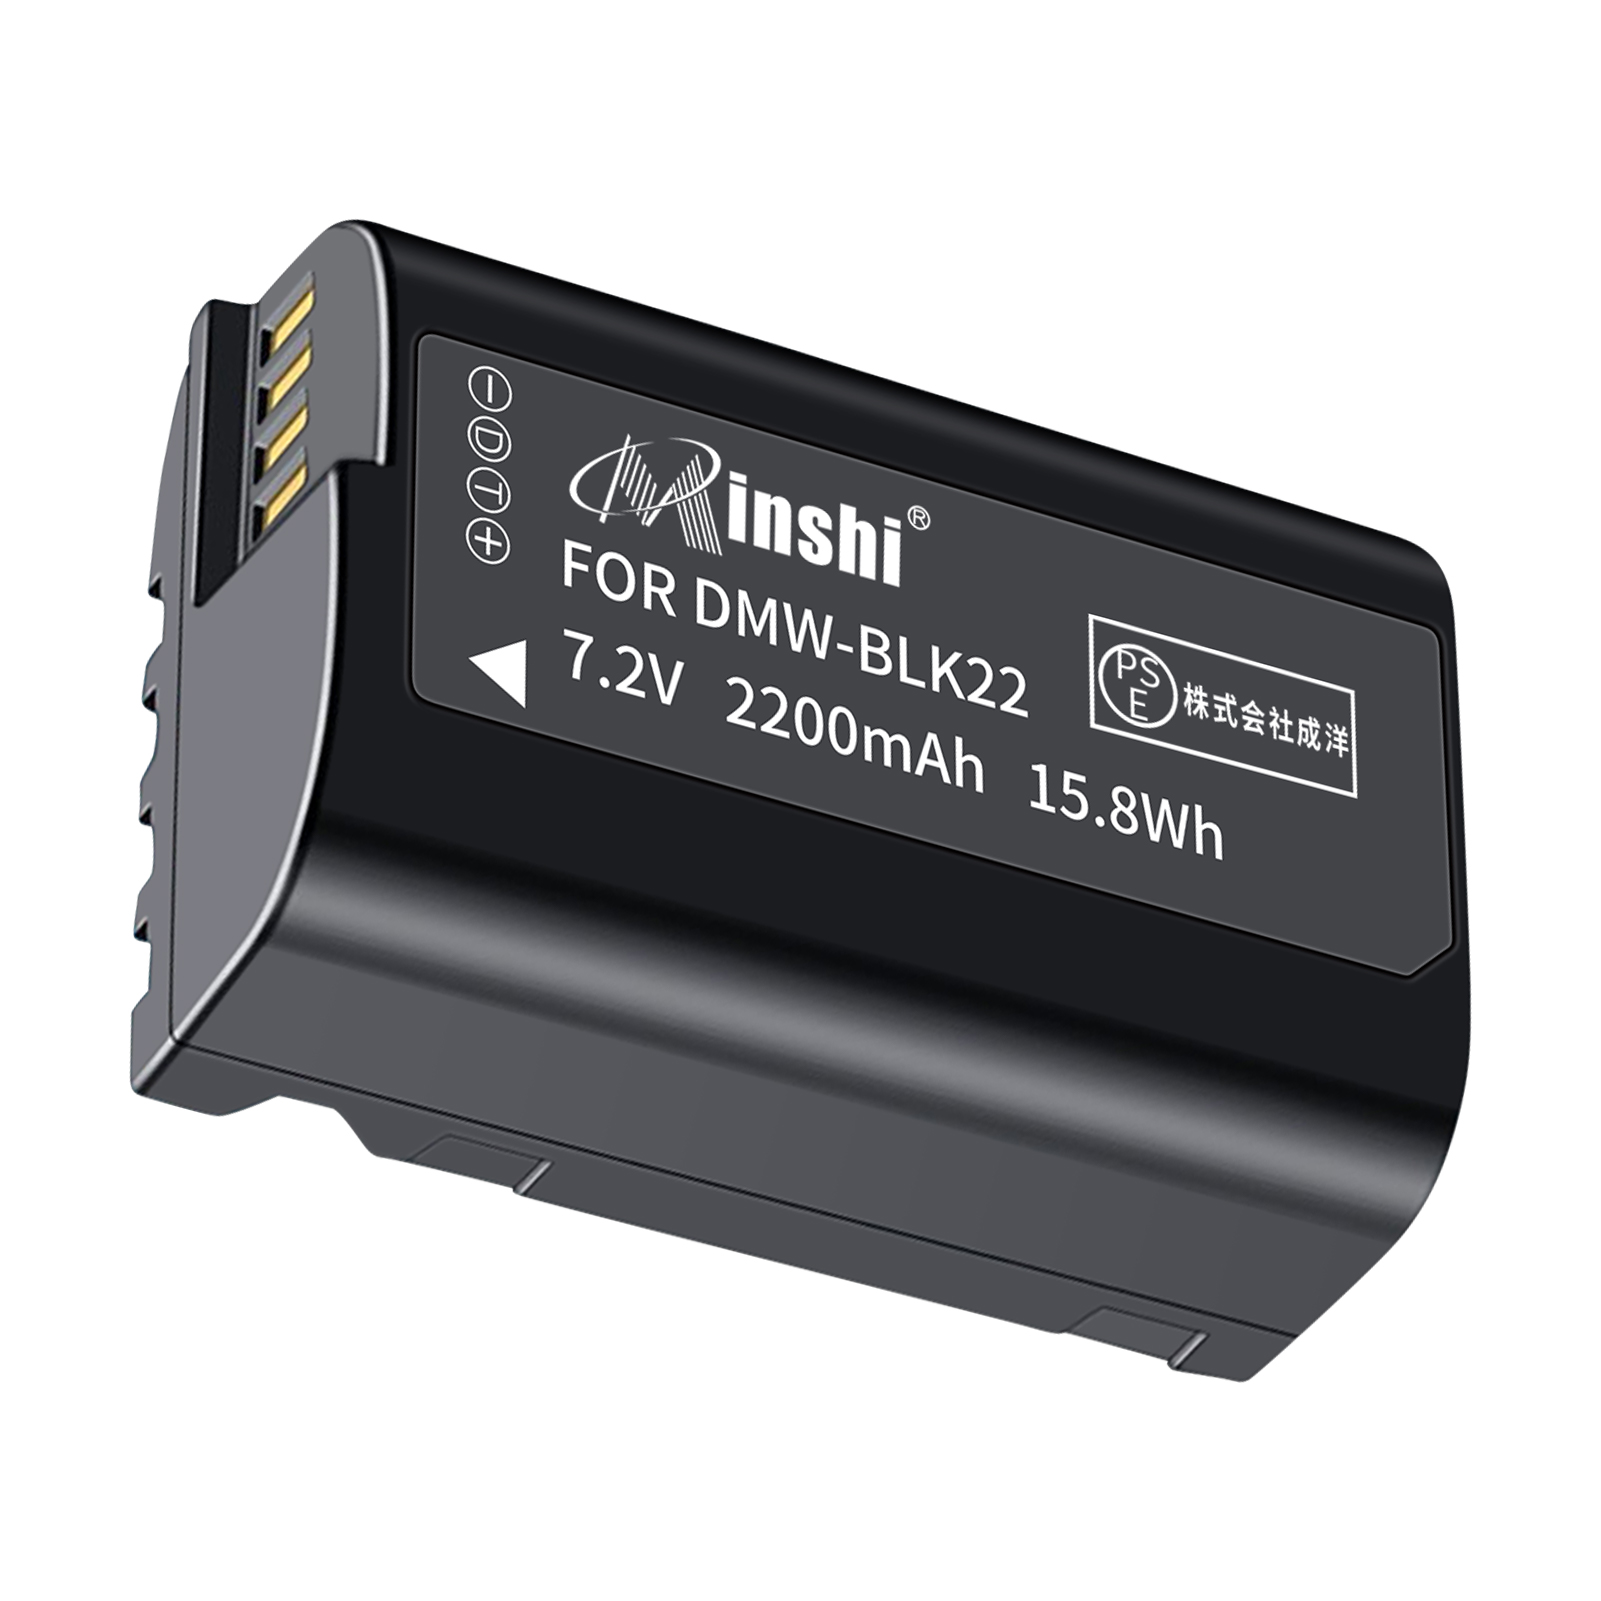 【1年保証】minshi BLK22GK 【2200mAh 7.2V】 PSE認定済 高品質  DMW-BLK22互換バッテリー